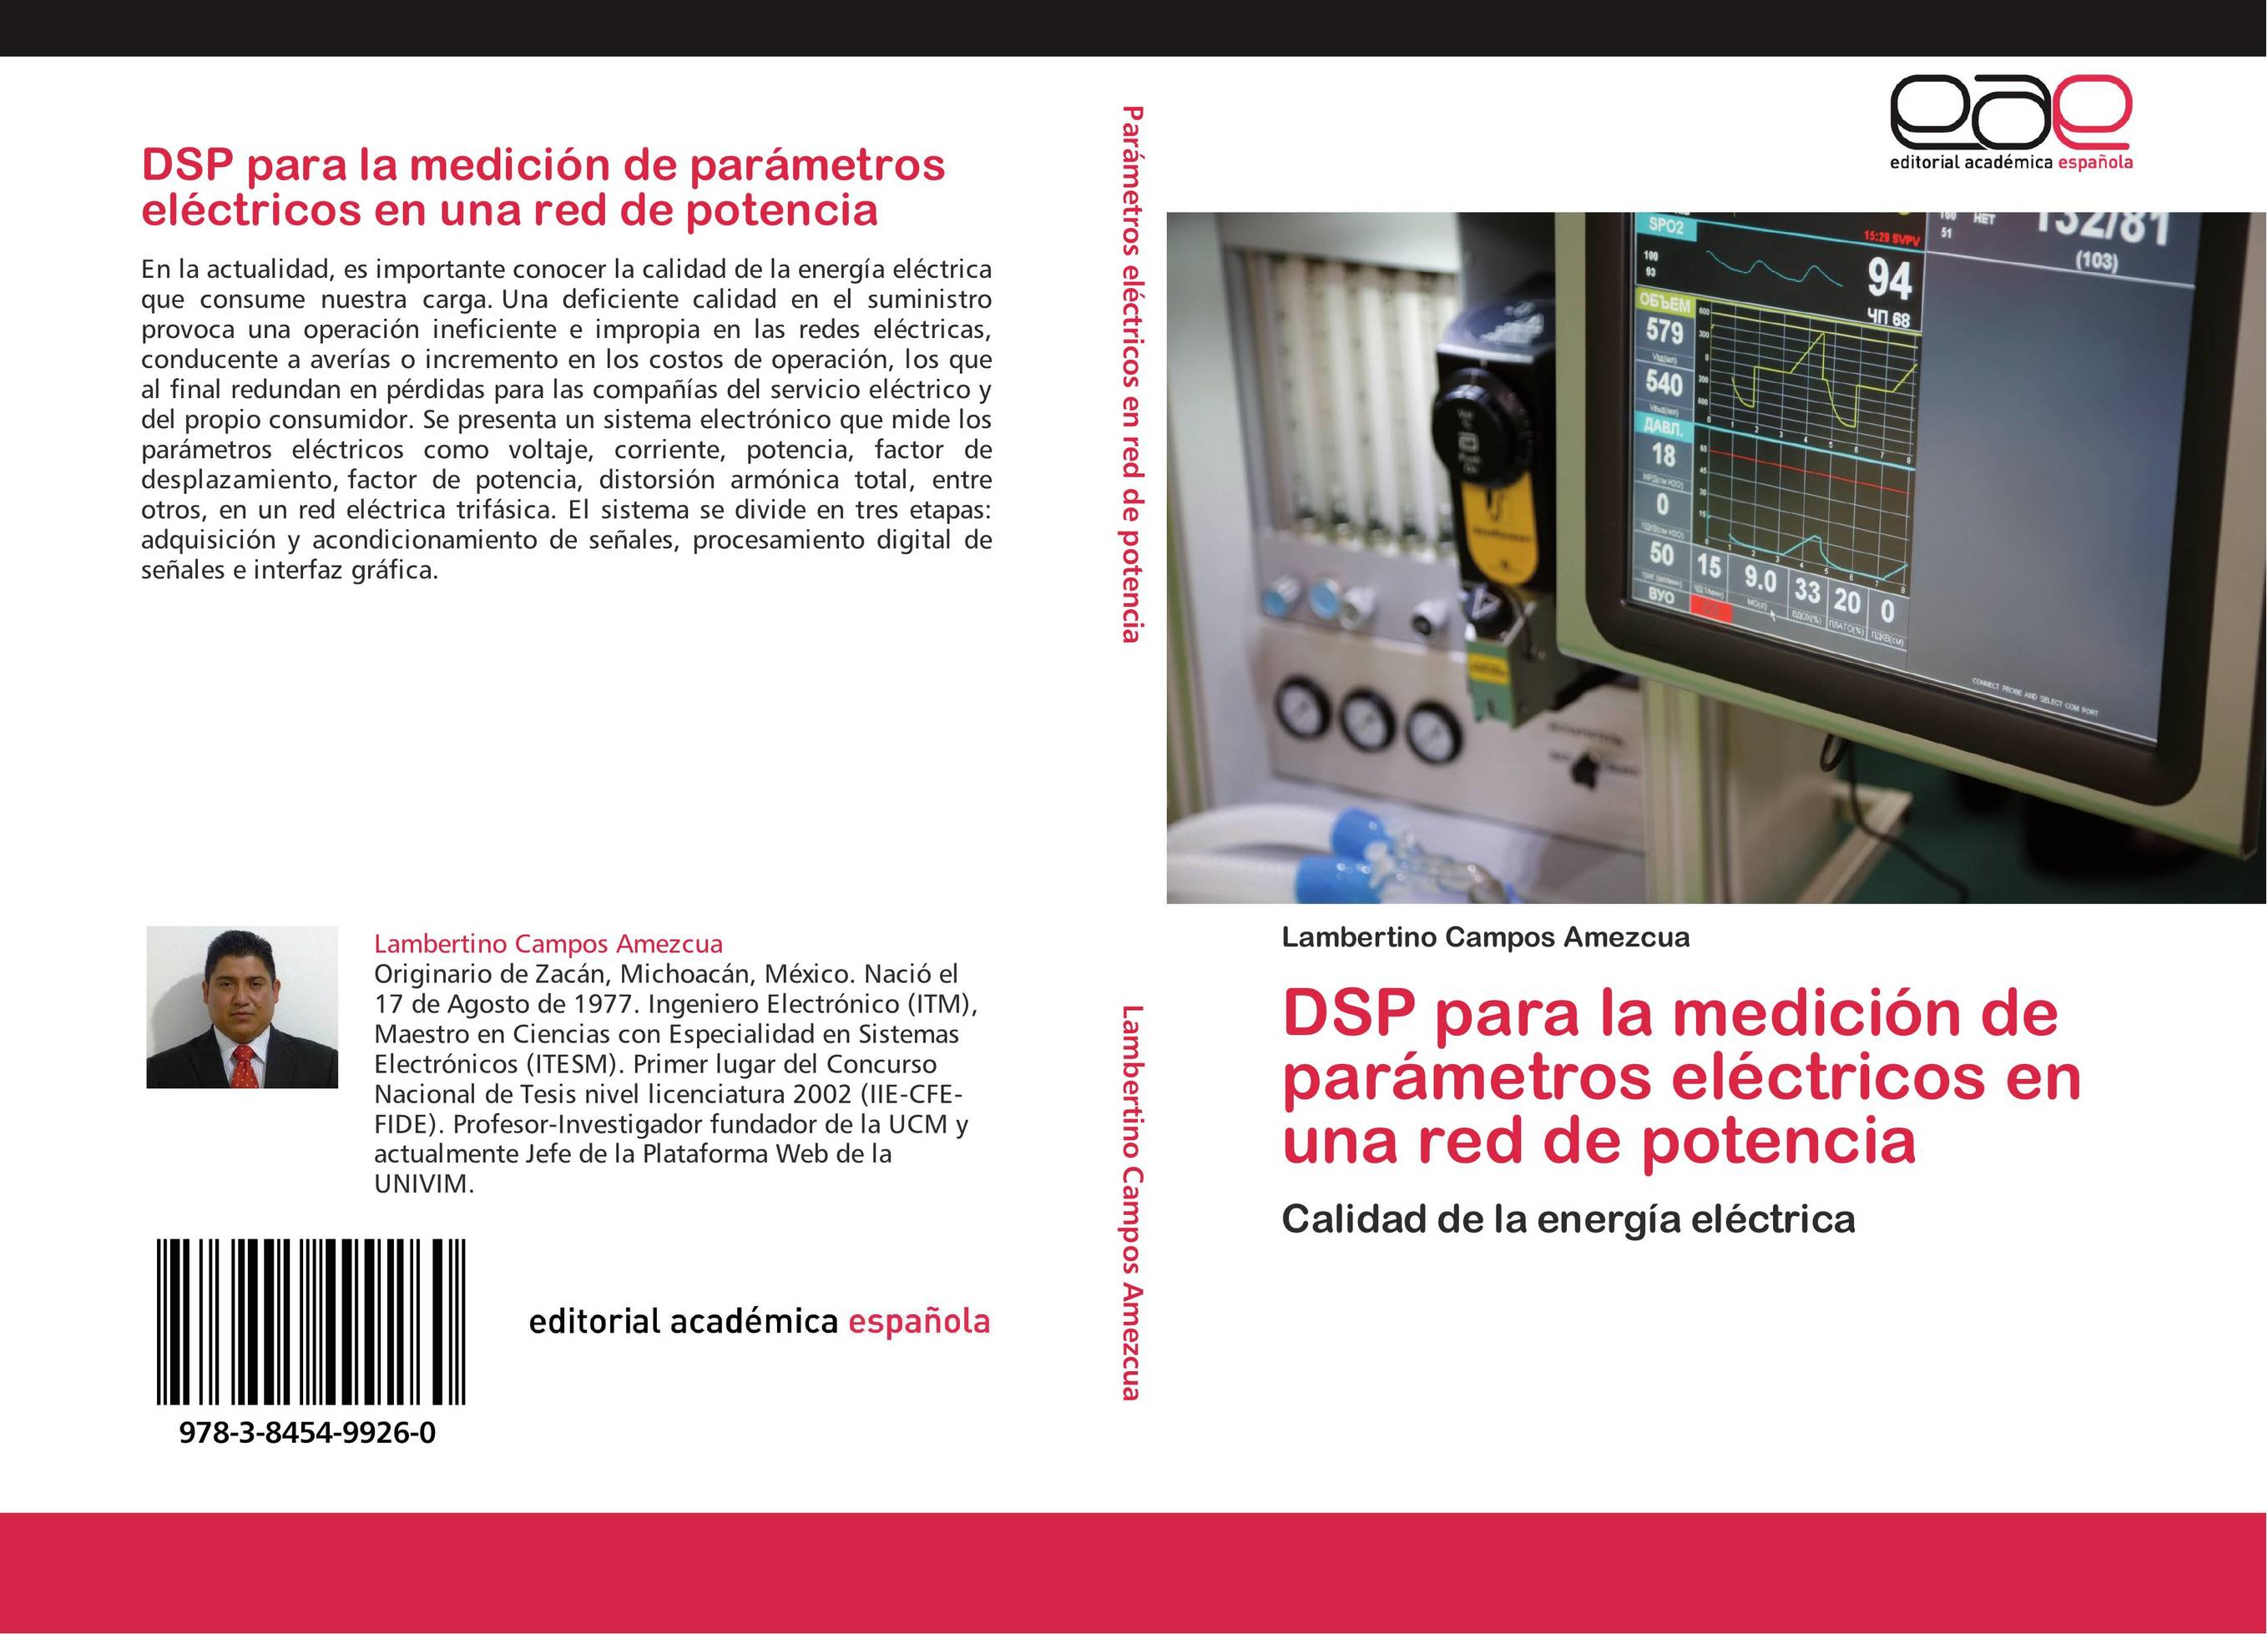 DSP para la medición de parámetros eléctricos en una red de potencia